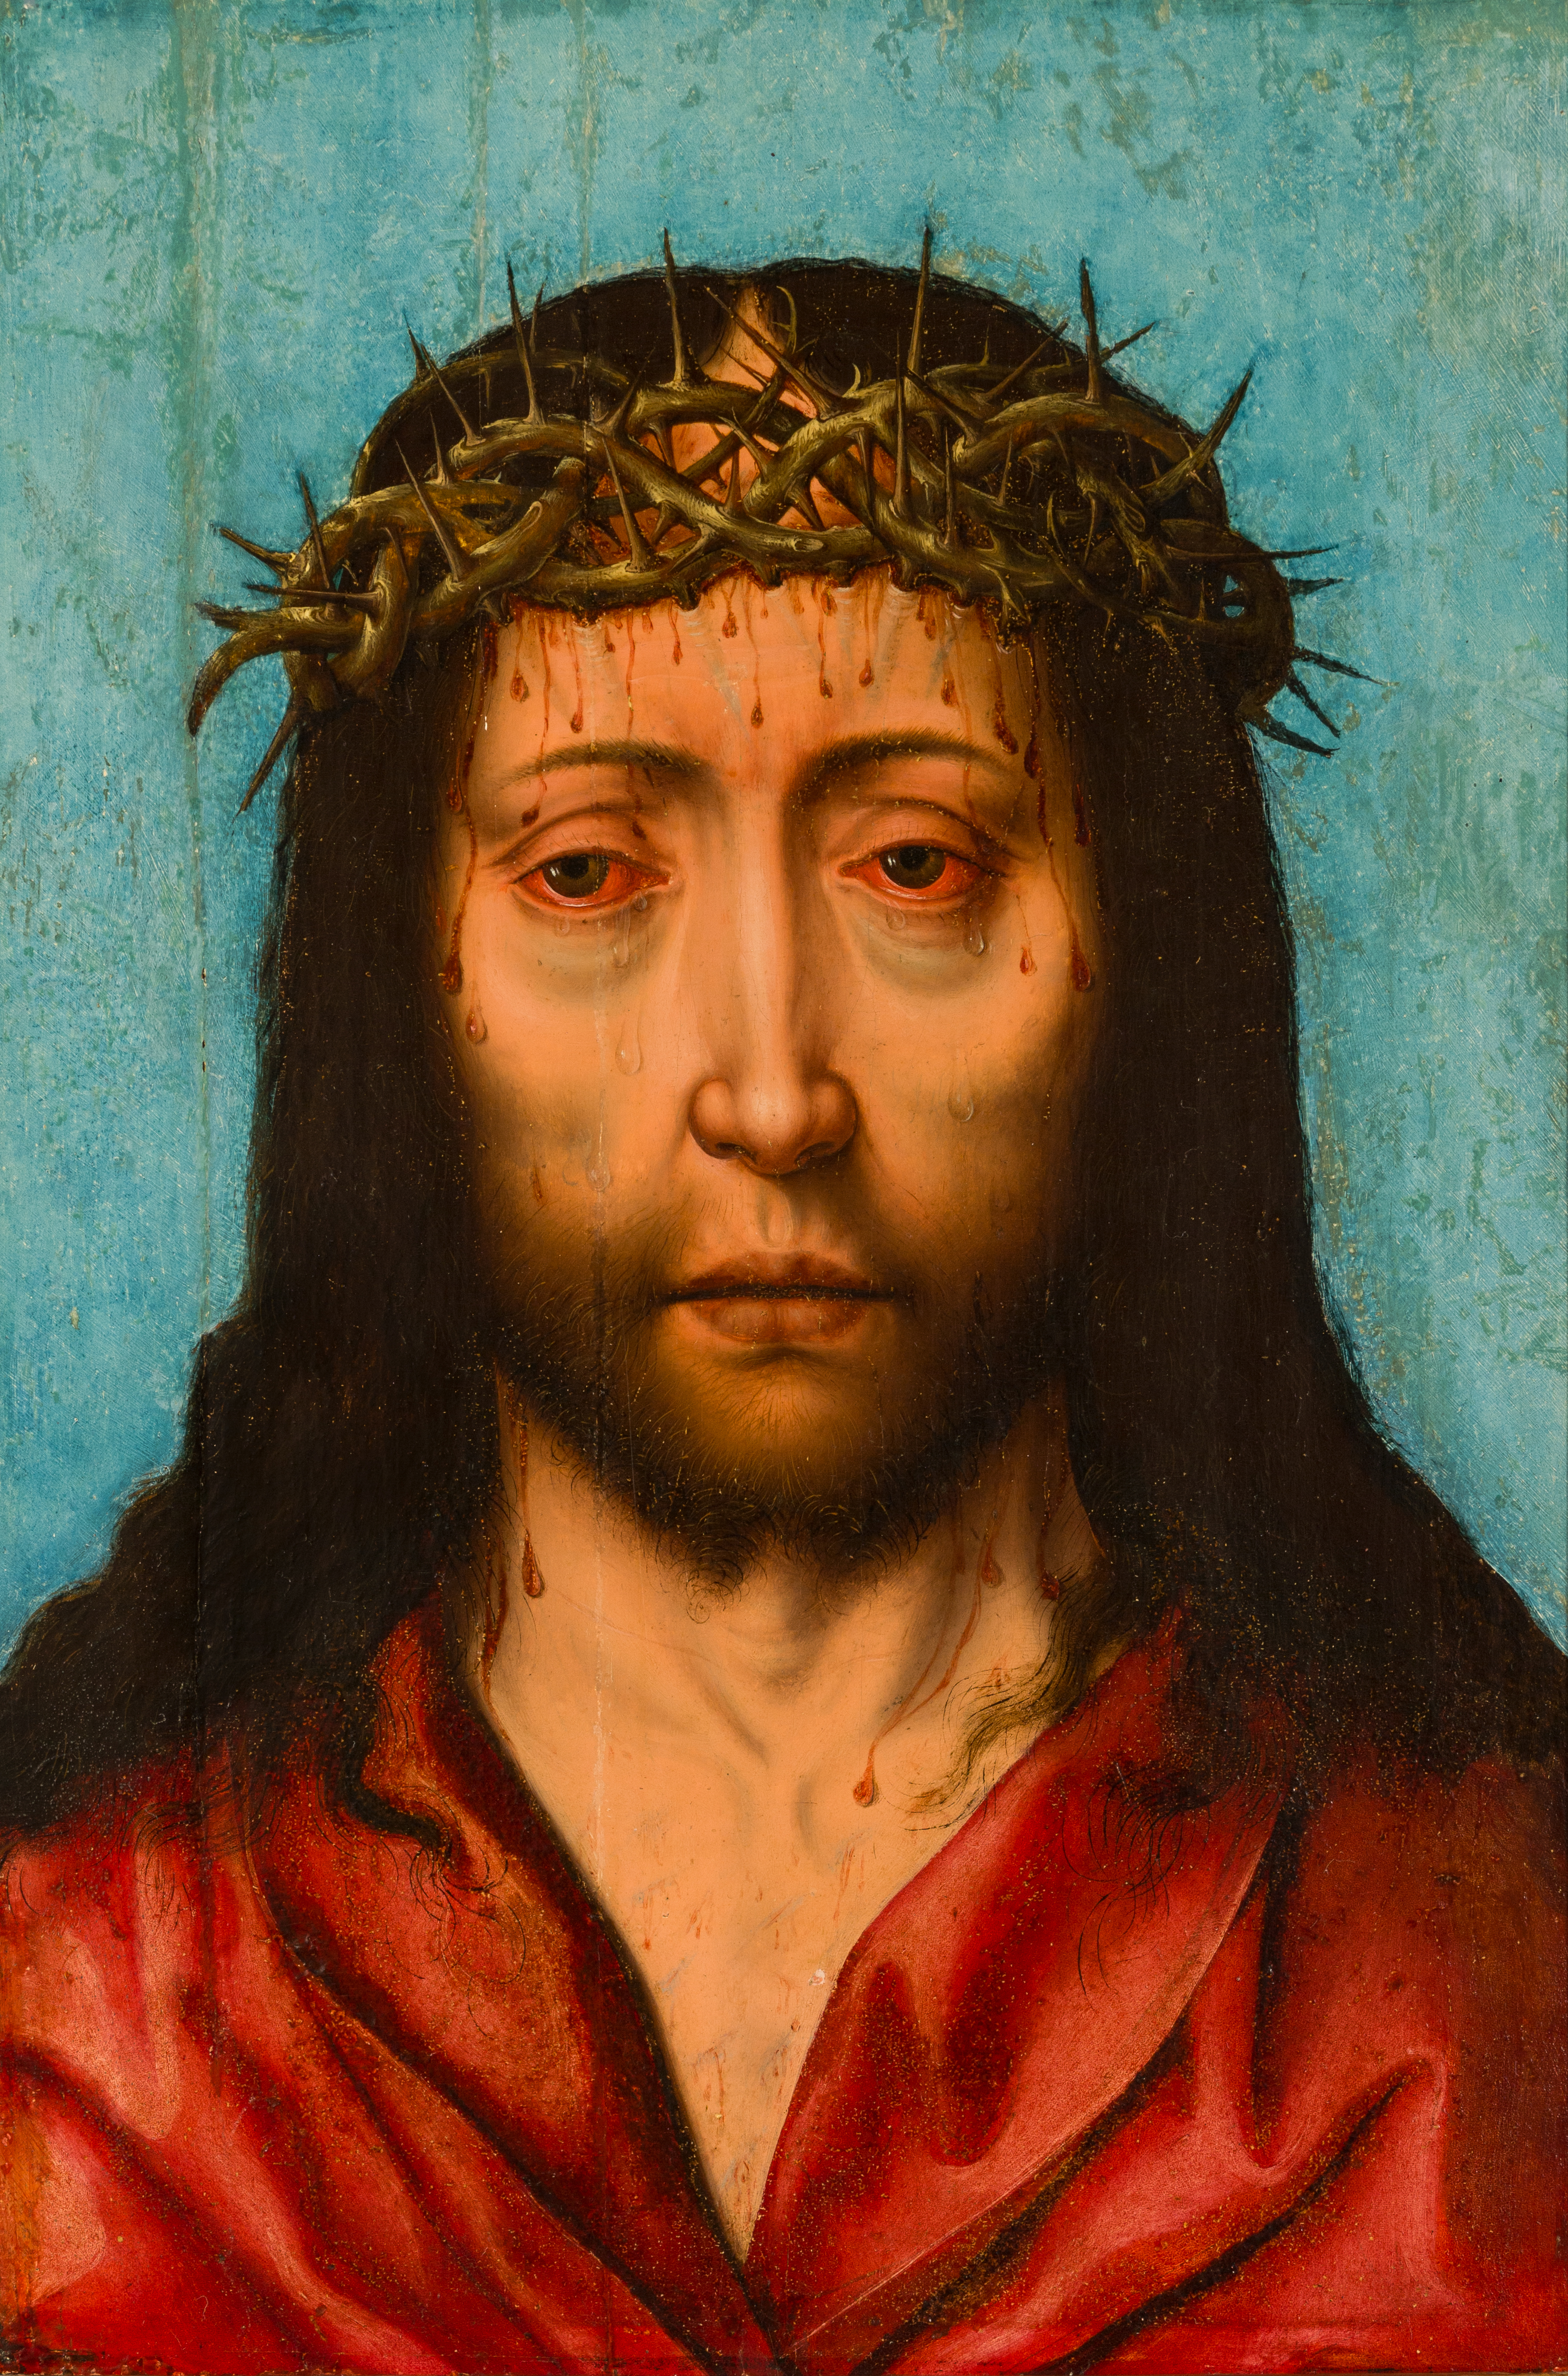 Kristus som smärtoman, ca 1500, Efter Albrecht Bouts, olja på pannå, OM.LM.002455 Christ as man of sorrows, about 1500, After Albrecht Bouts, oil on panel